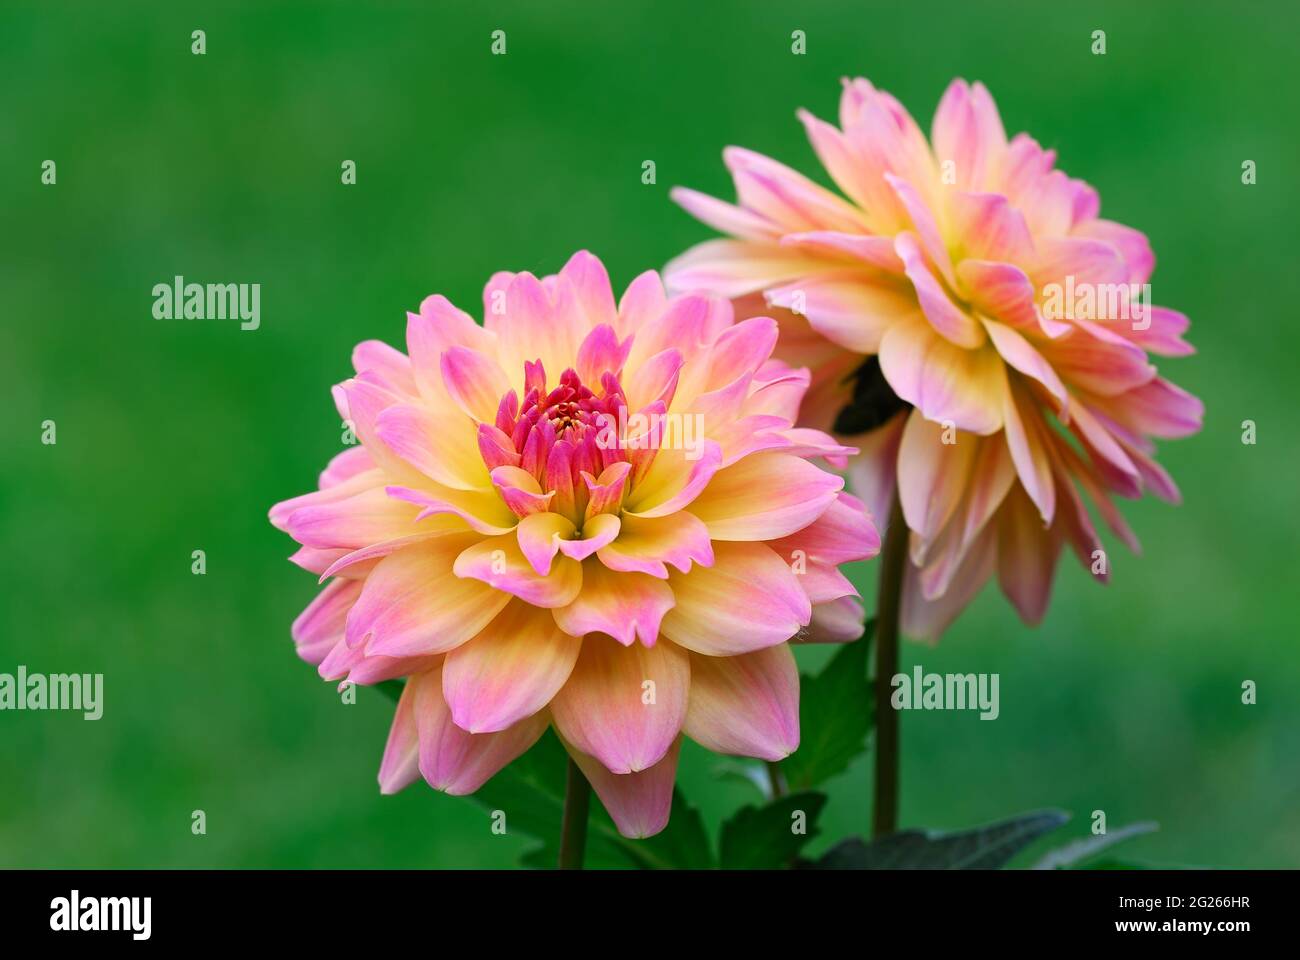 Georgina, Dahlia Blume im Blumenbeet, Nahaufnahme. Blütenblätter in rosa-gelber Farbe. Unscharfer grüner natürlicher Hintergrund. Stockfoto